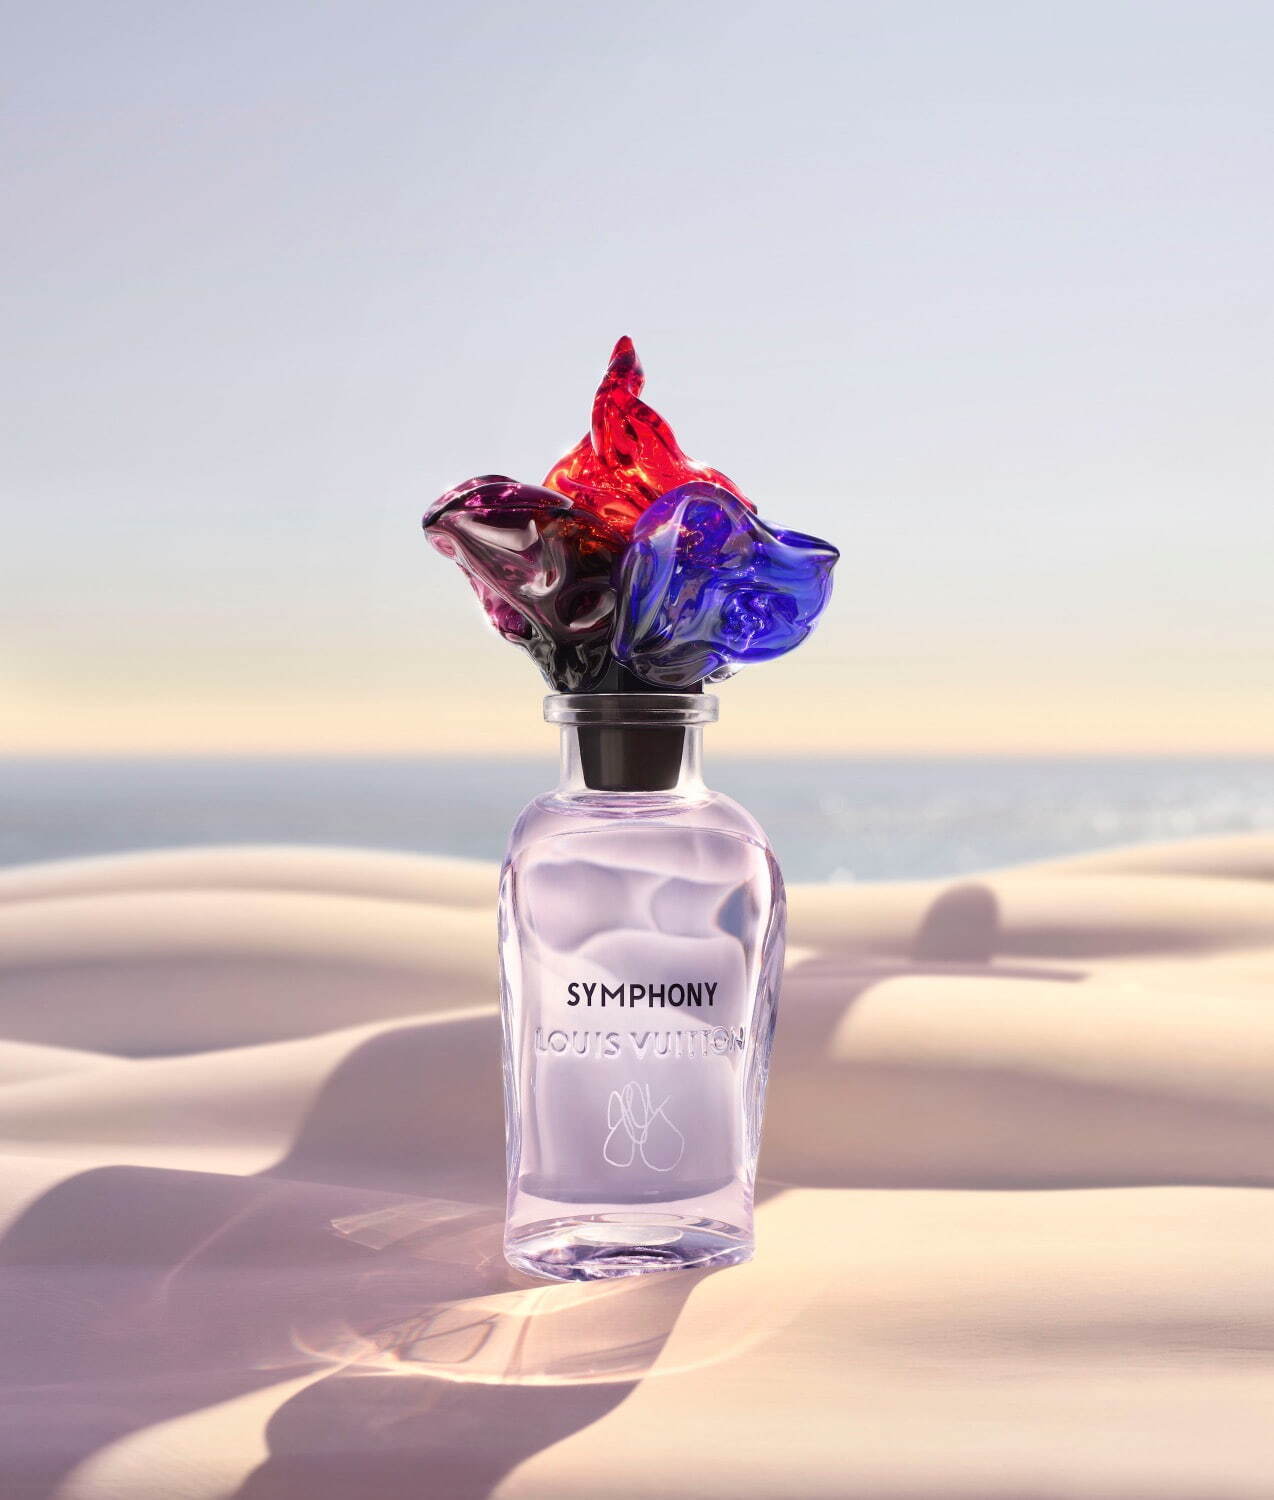 ルイ・ヴィトンの香水シンフォニー“花の造形”キャップをムラーノ